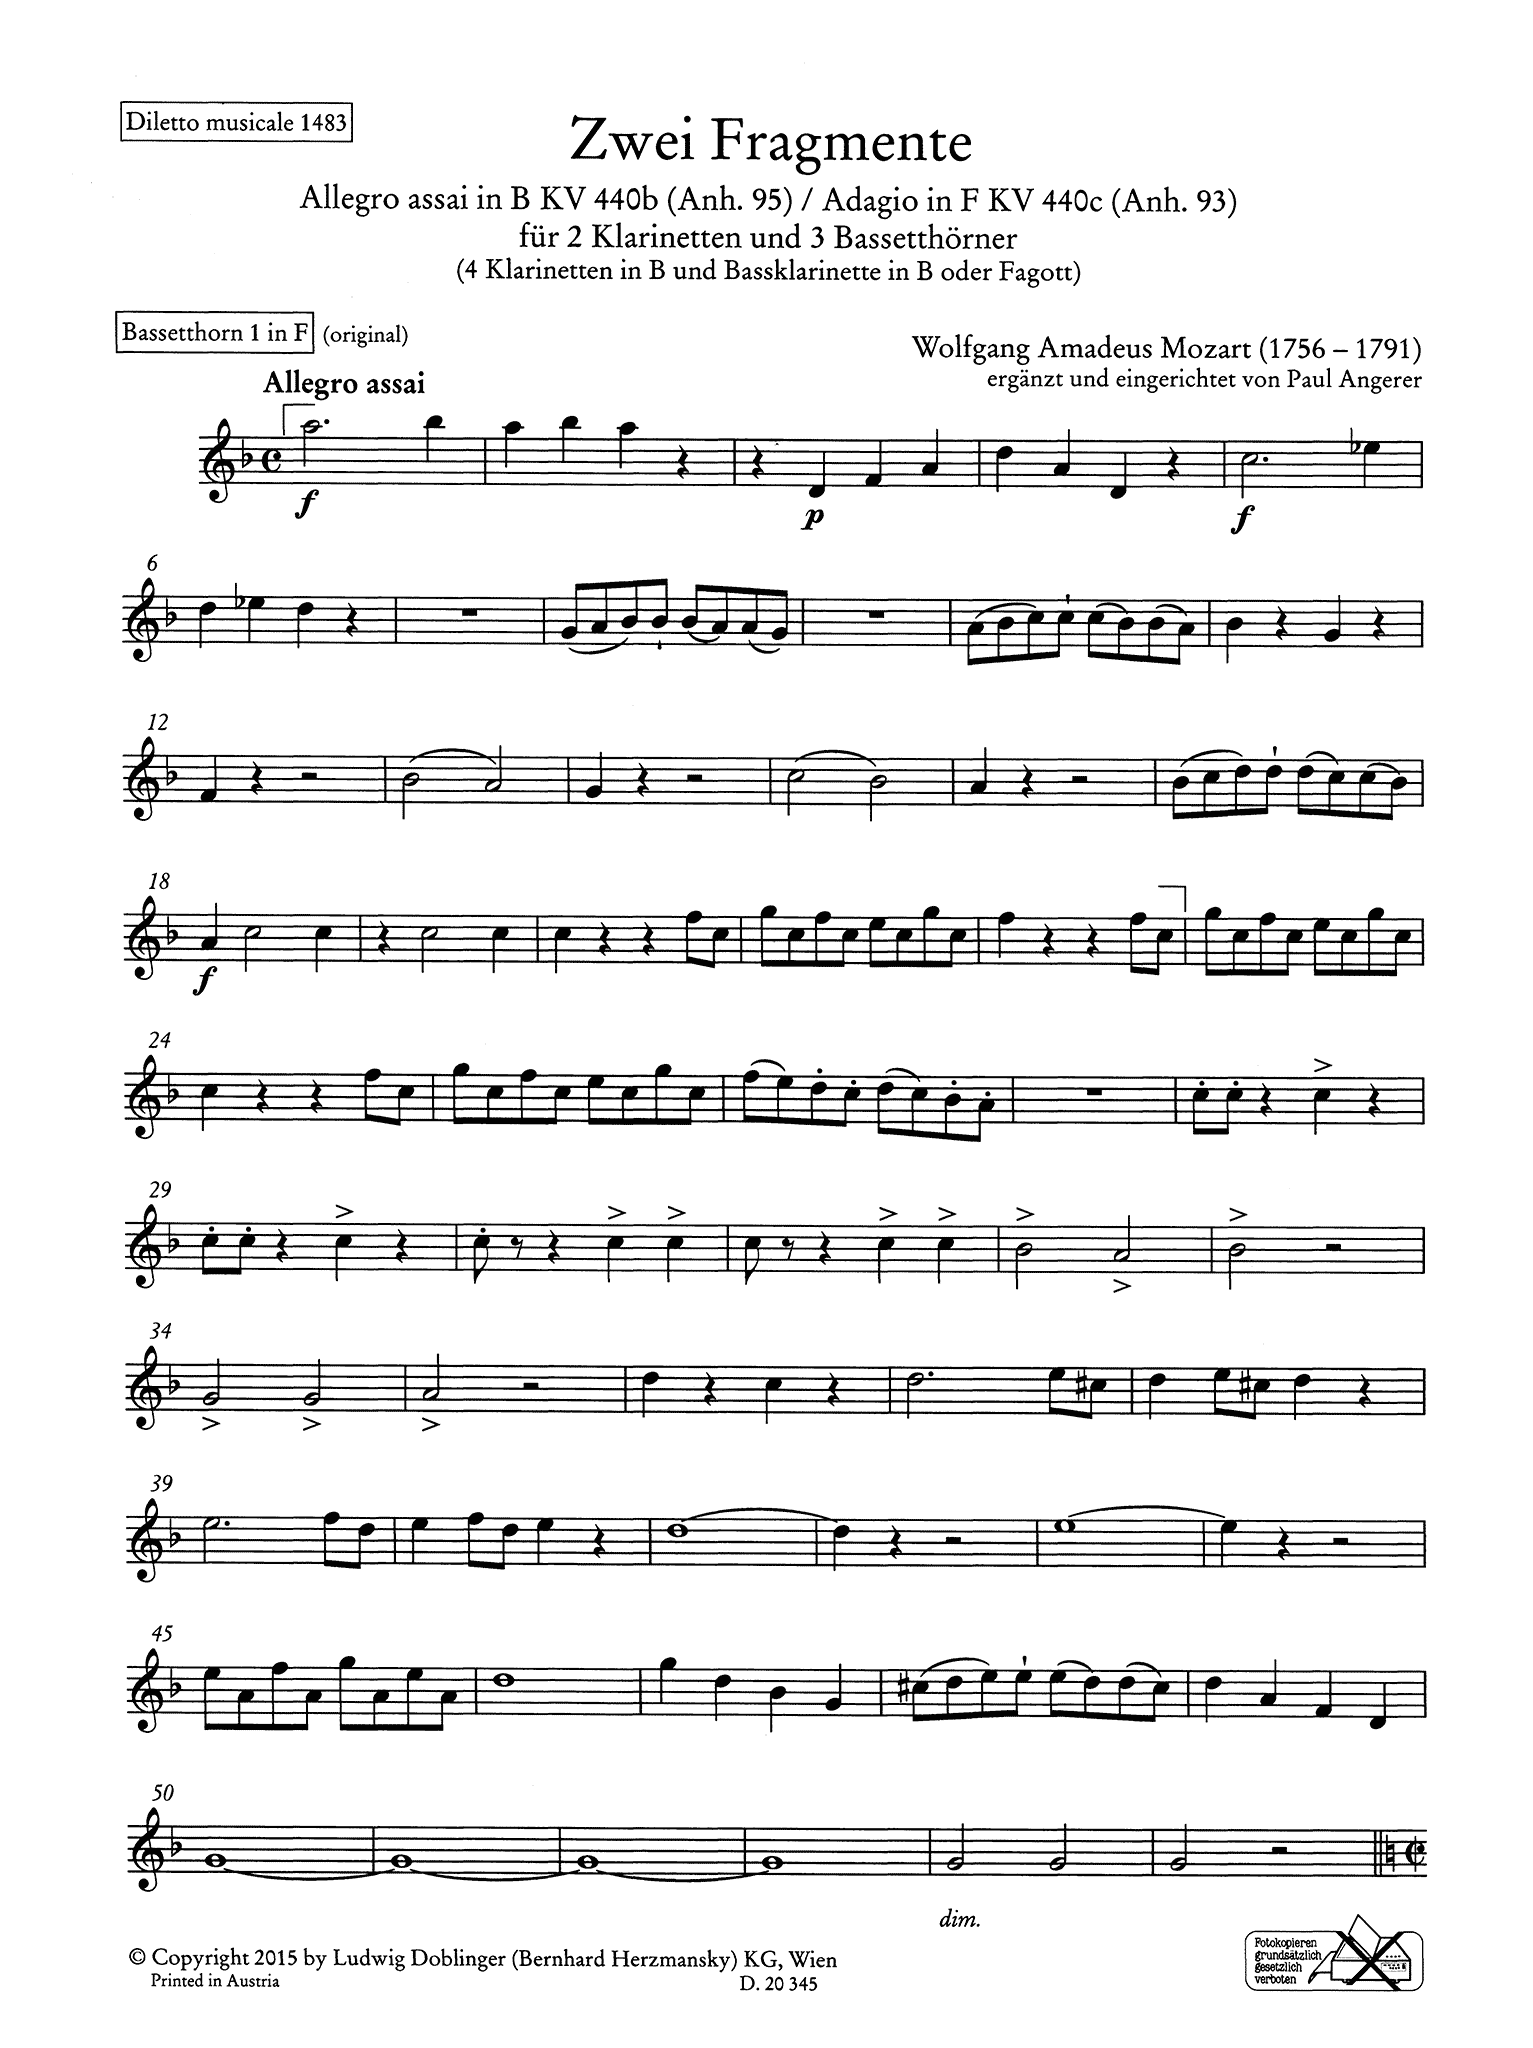 Mozart Angerer Fantasia on Two Fragments KV 440b (Anh. 95) & KV 440c (Anh. 93) basset horn part